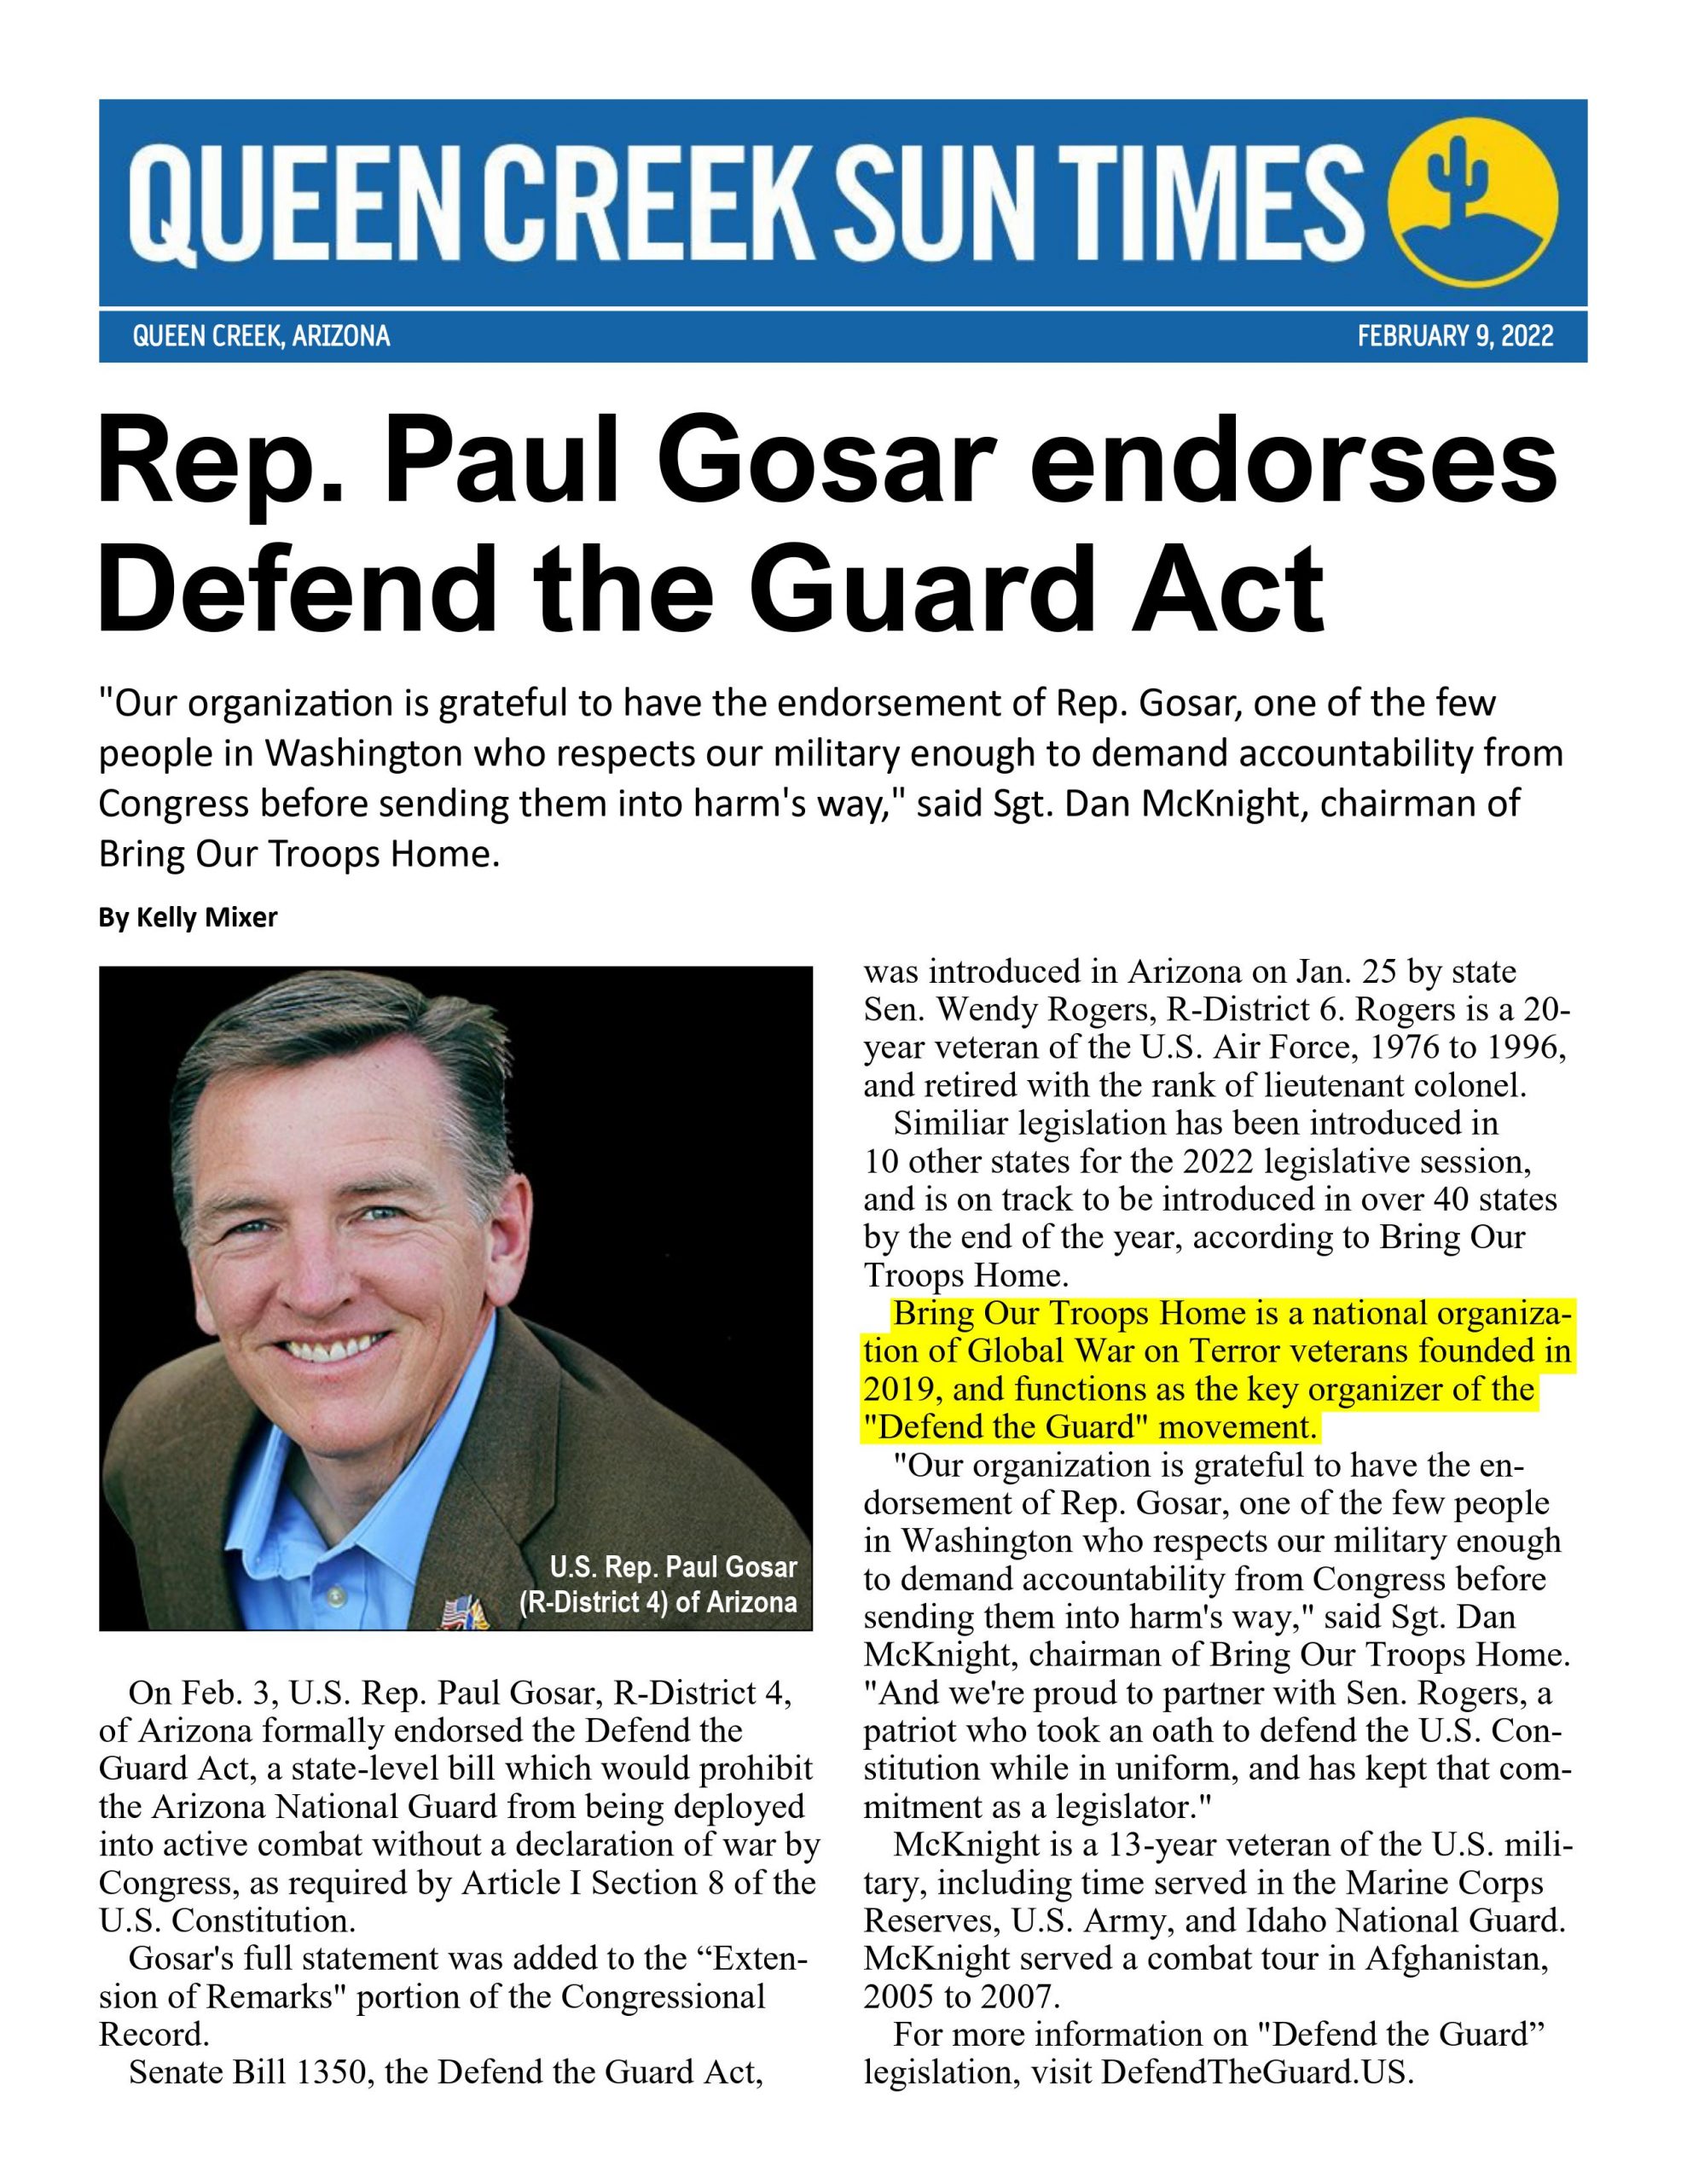 Rep. Paul Gosar Endorses Defend the Guard Act